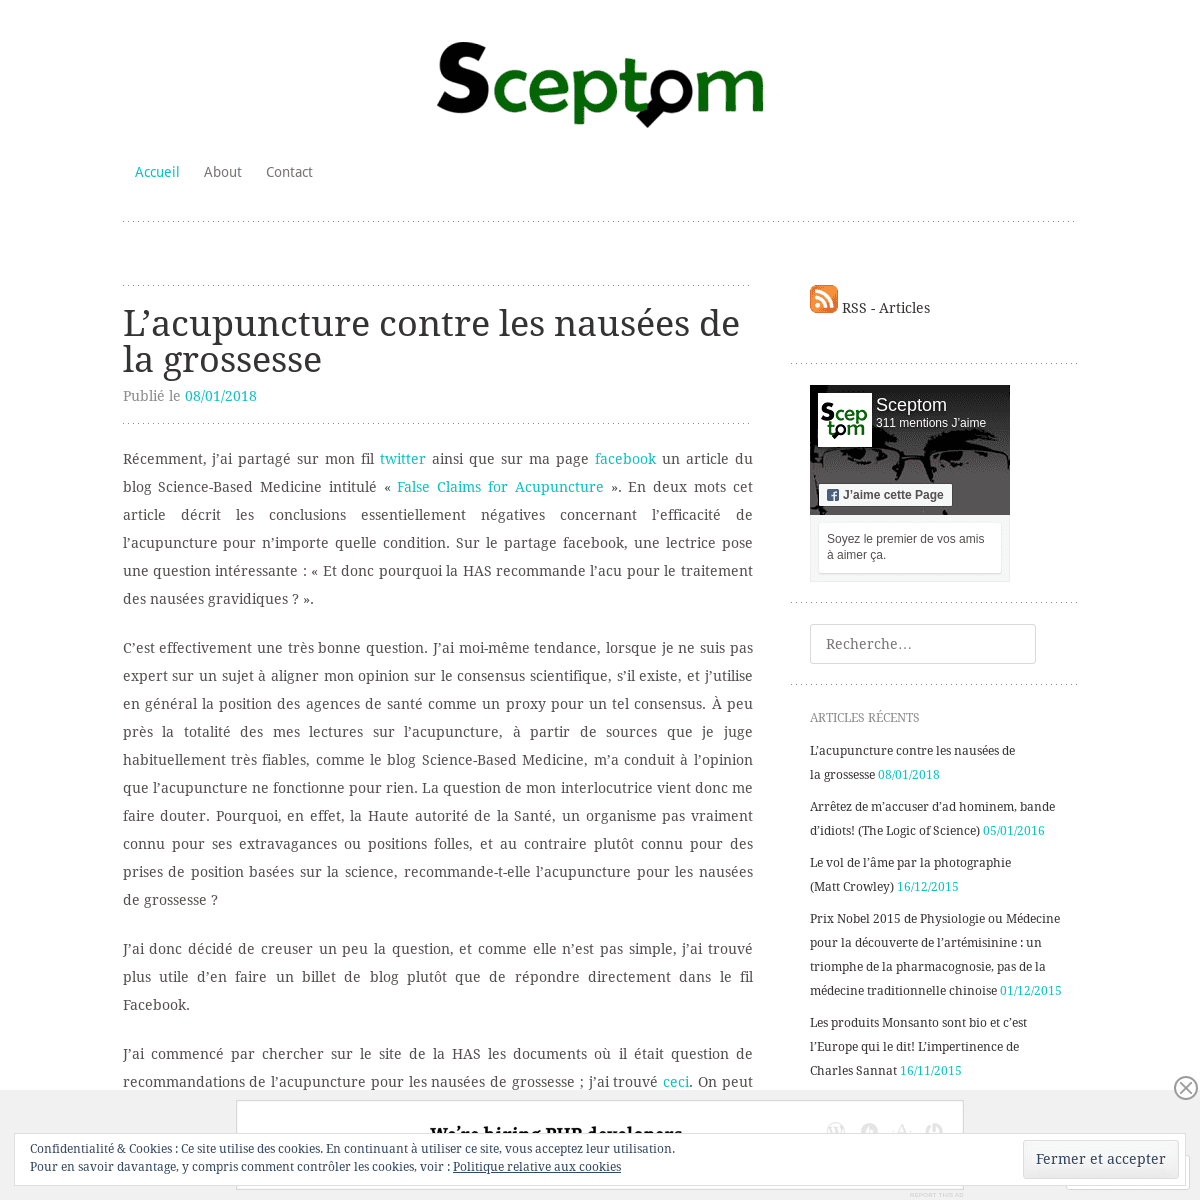 A complete backup of sceptom.wordpress.com